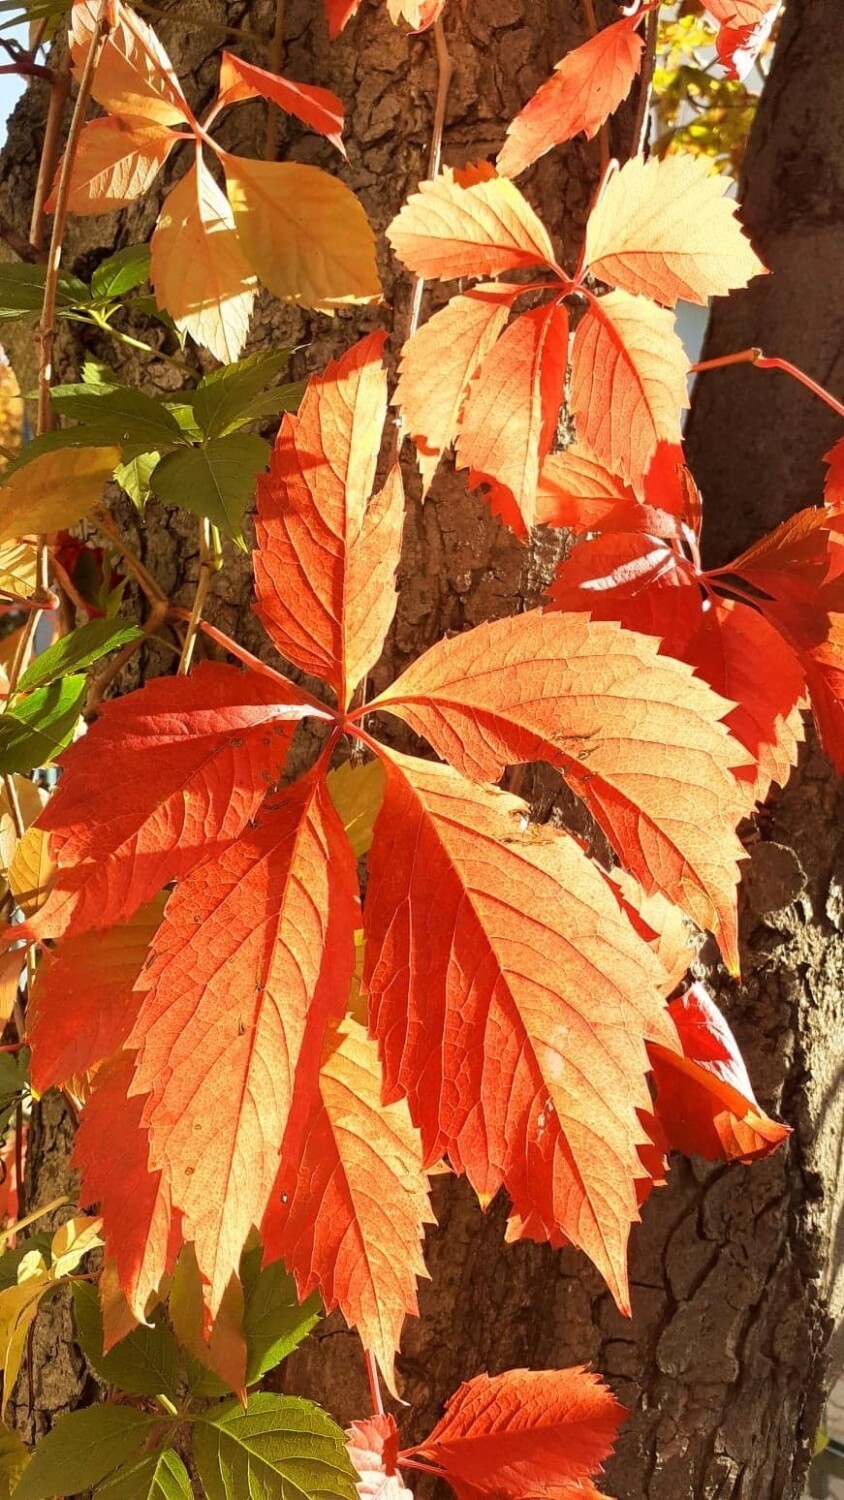 Piękna jesienna sceneria w parku przy Zamku Dubiecko. Zjawiskowe barwy oszałamiają. Przekonajcie się sami! [ZDJĘCIA]